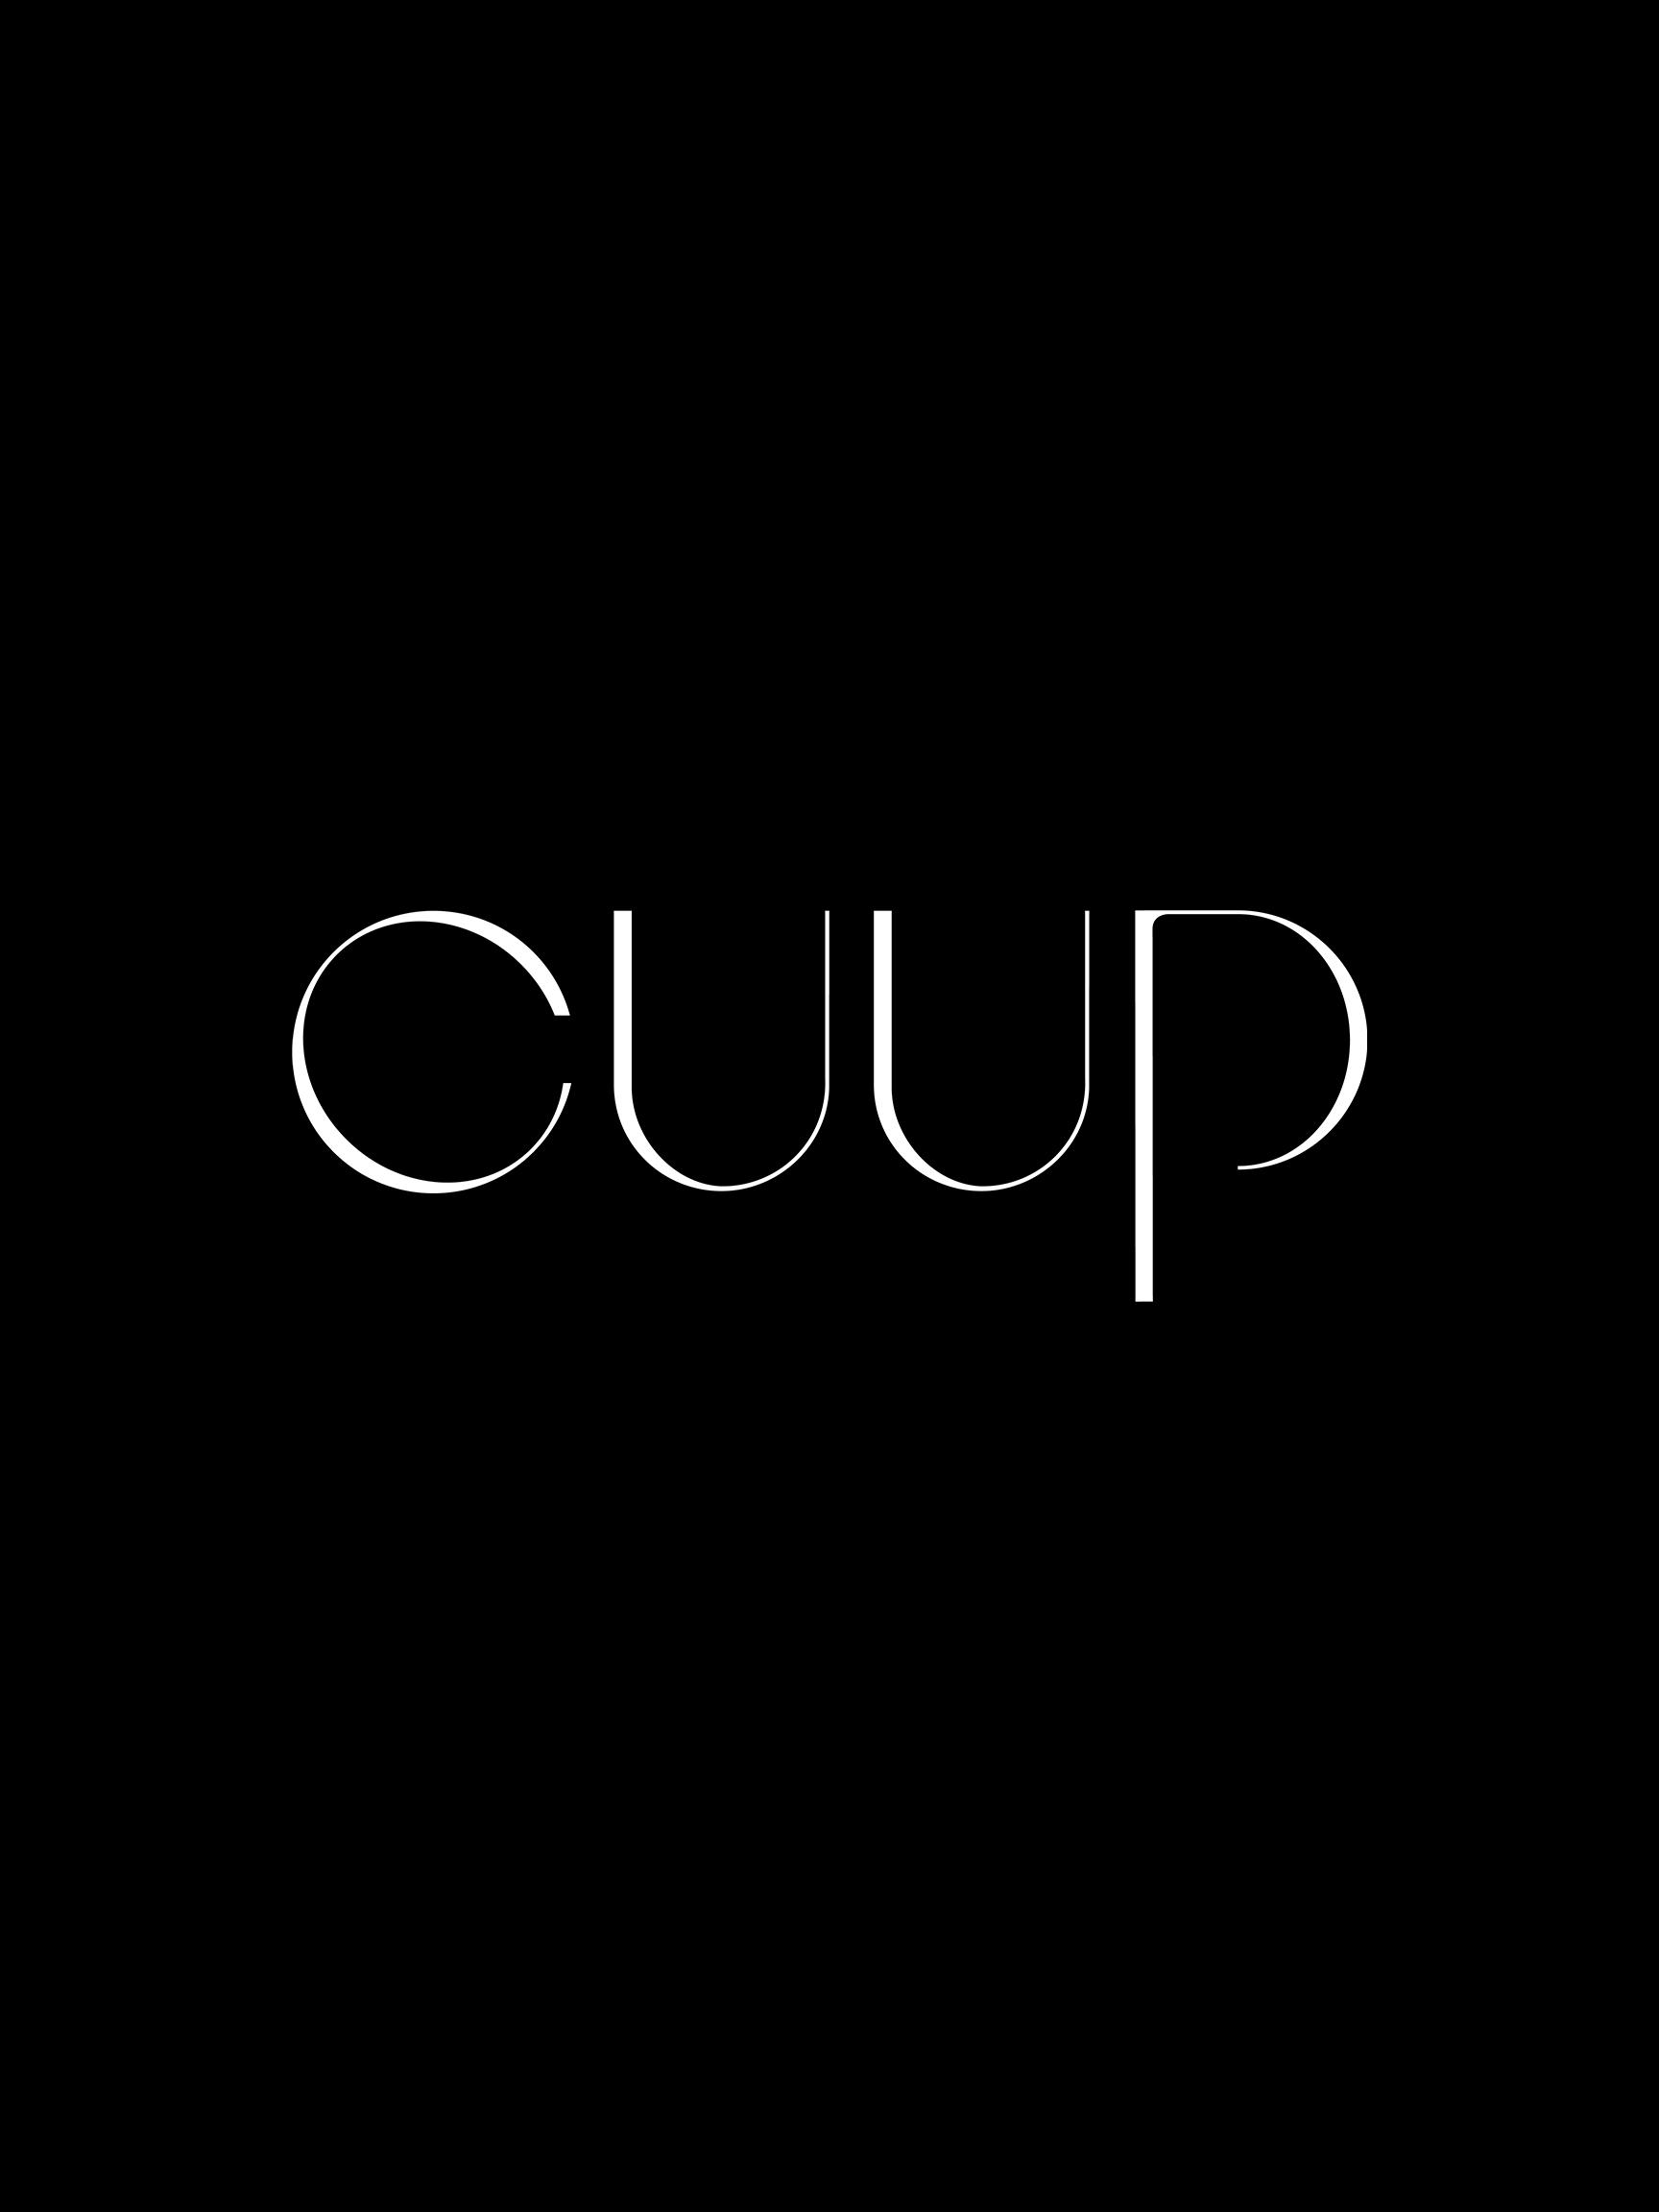 cuup logo 2x